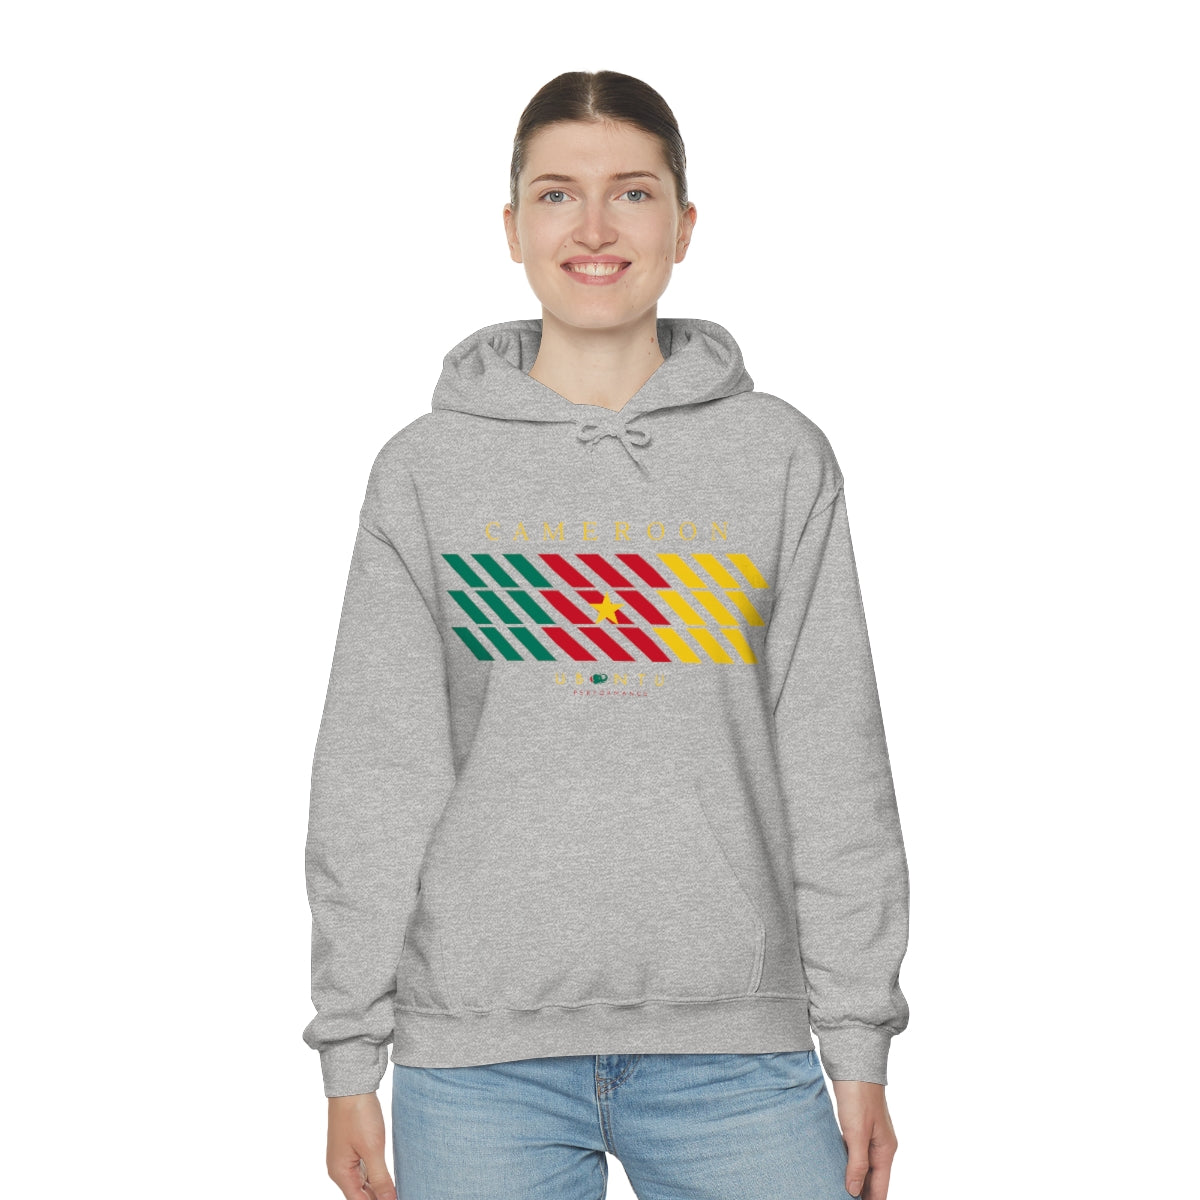 Cameroon flag colors Men's Hooded Sweatshirt soccer football fan gift hoodie